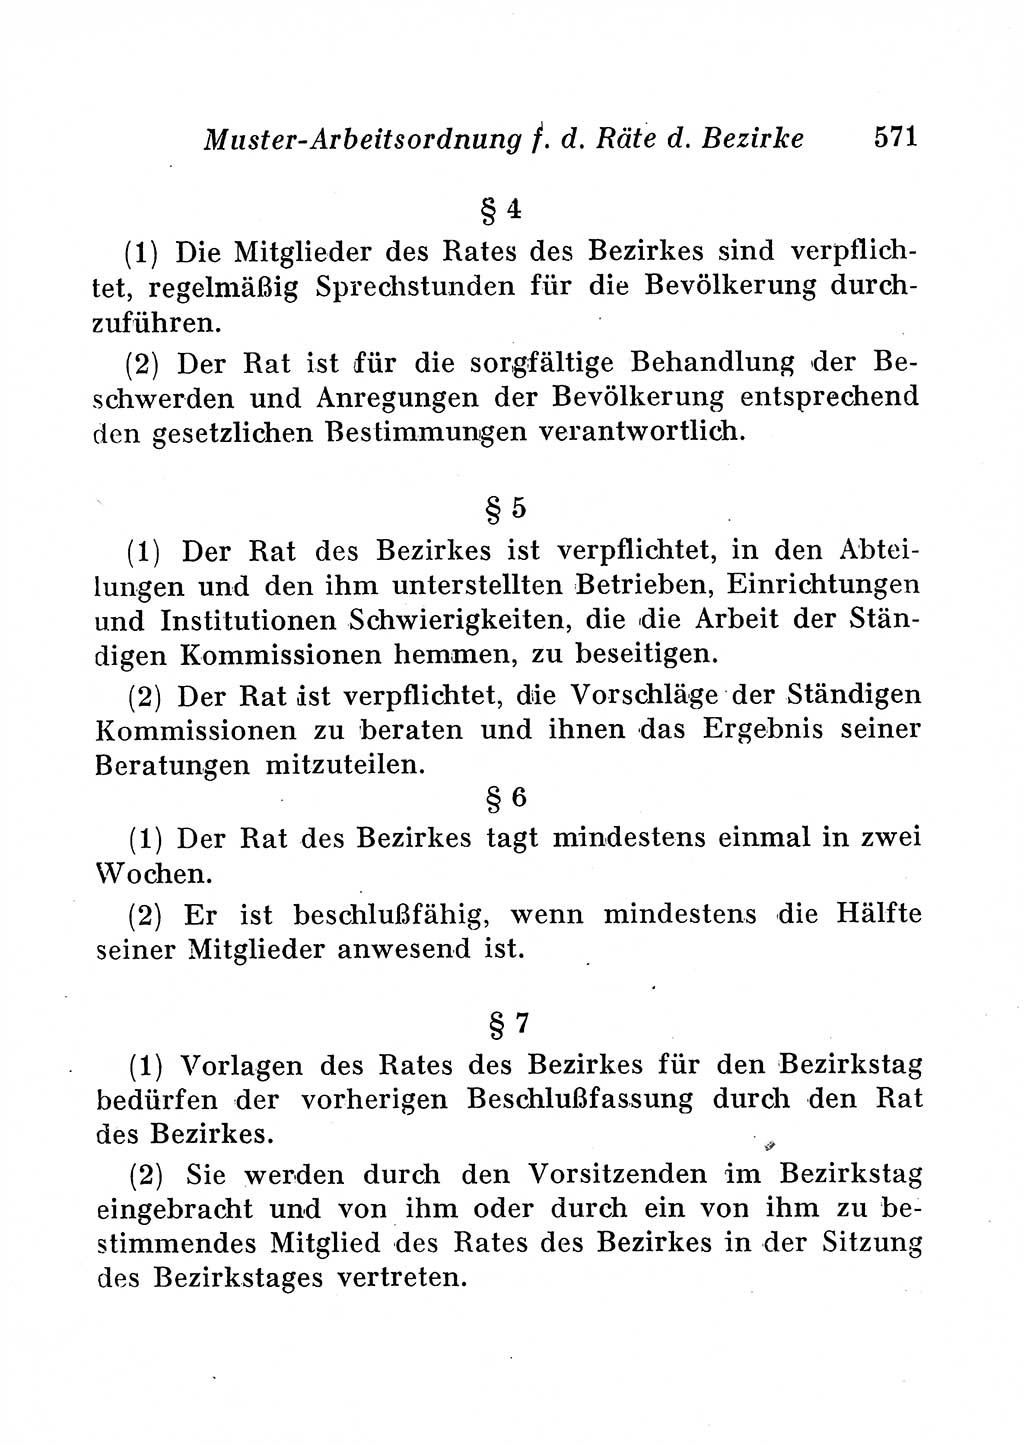 Staats- und verwaltungsrechtliche Gesetze der Deutschen Demokratischen Republik (DDR) 1958, Seite 571 (StVerwR Ges. DDR 1958, S. 571)